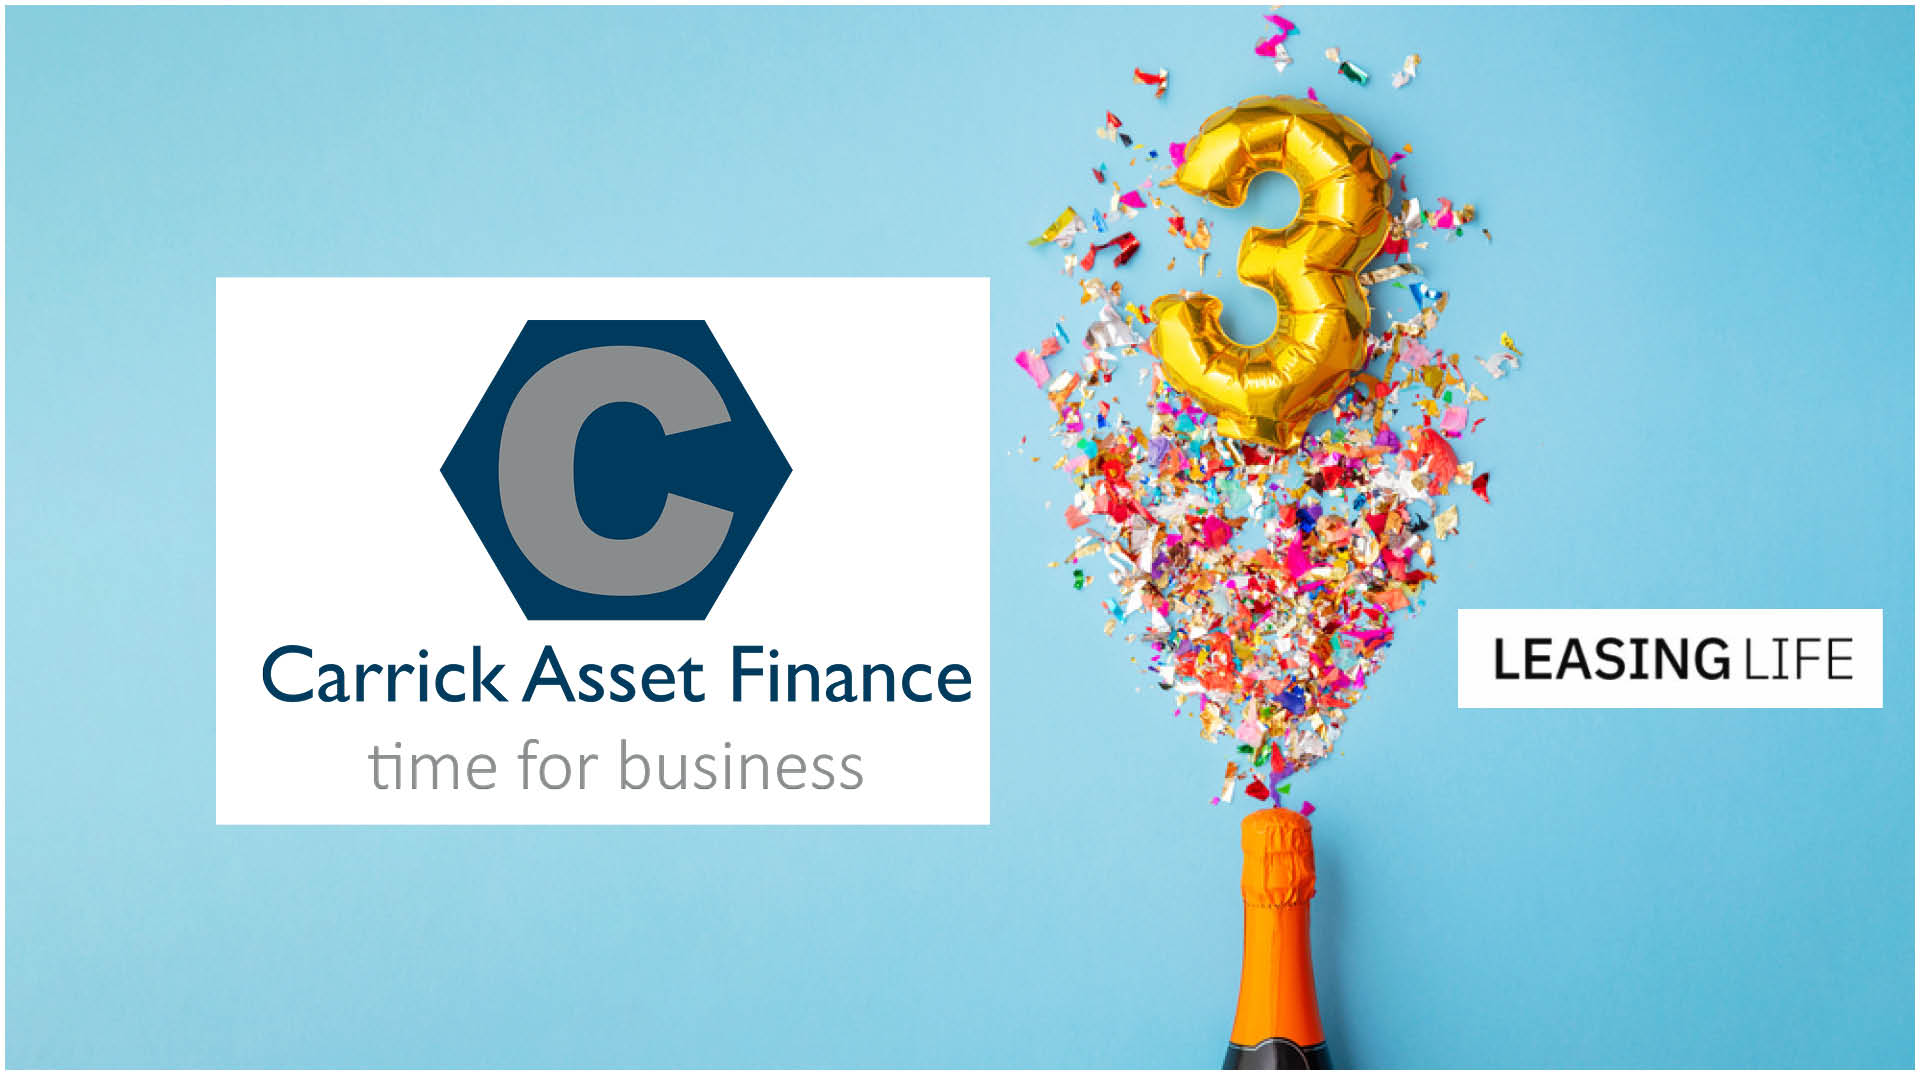 Carrick Asset Finance